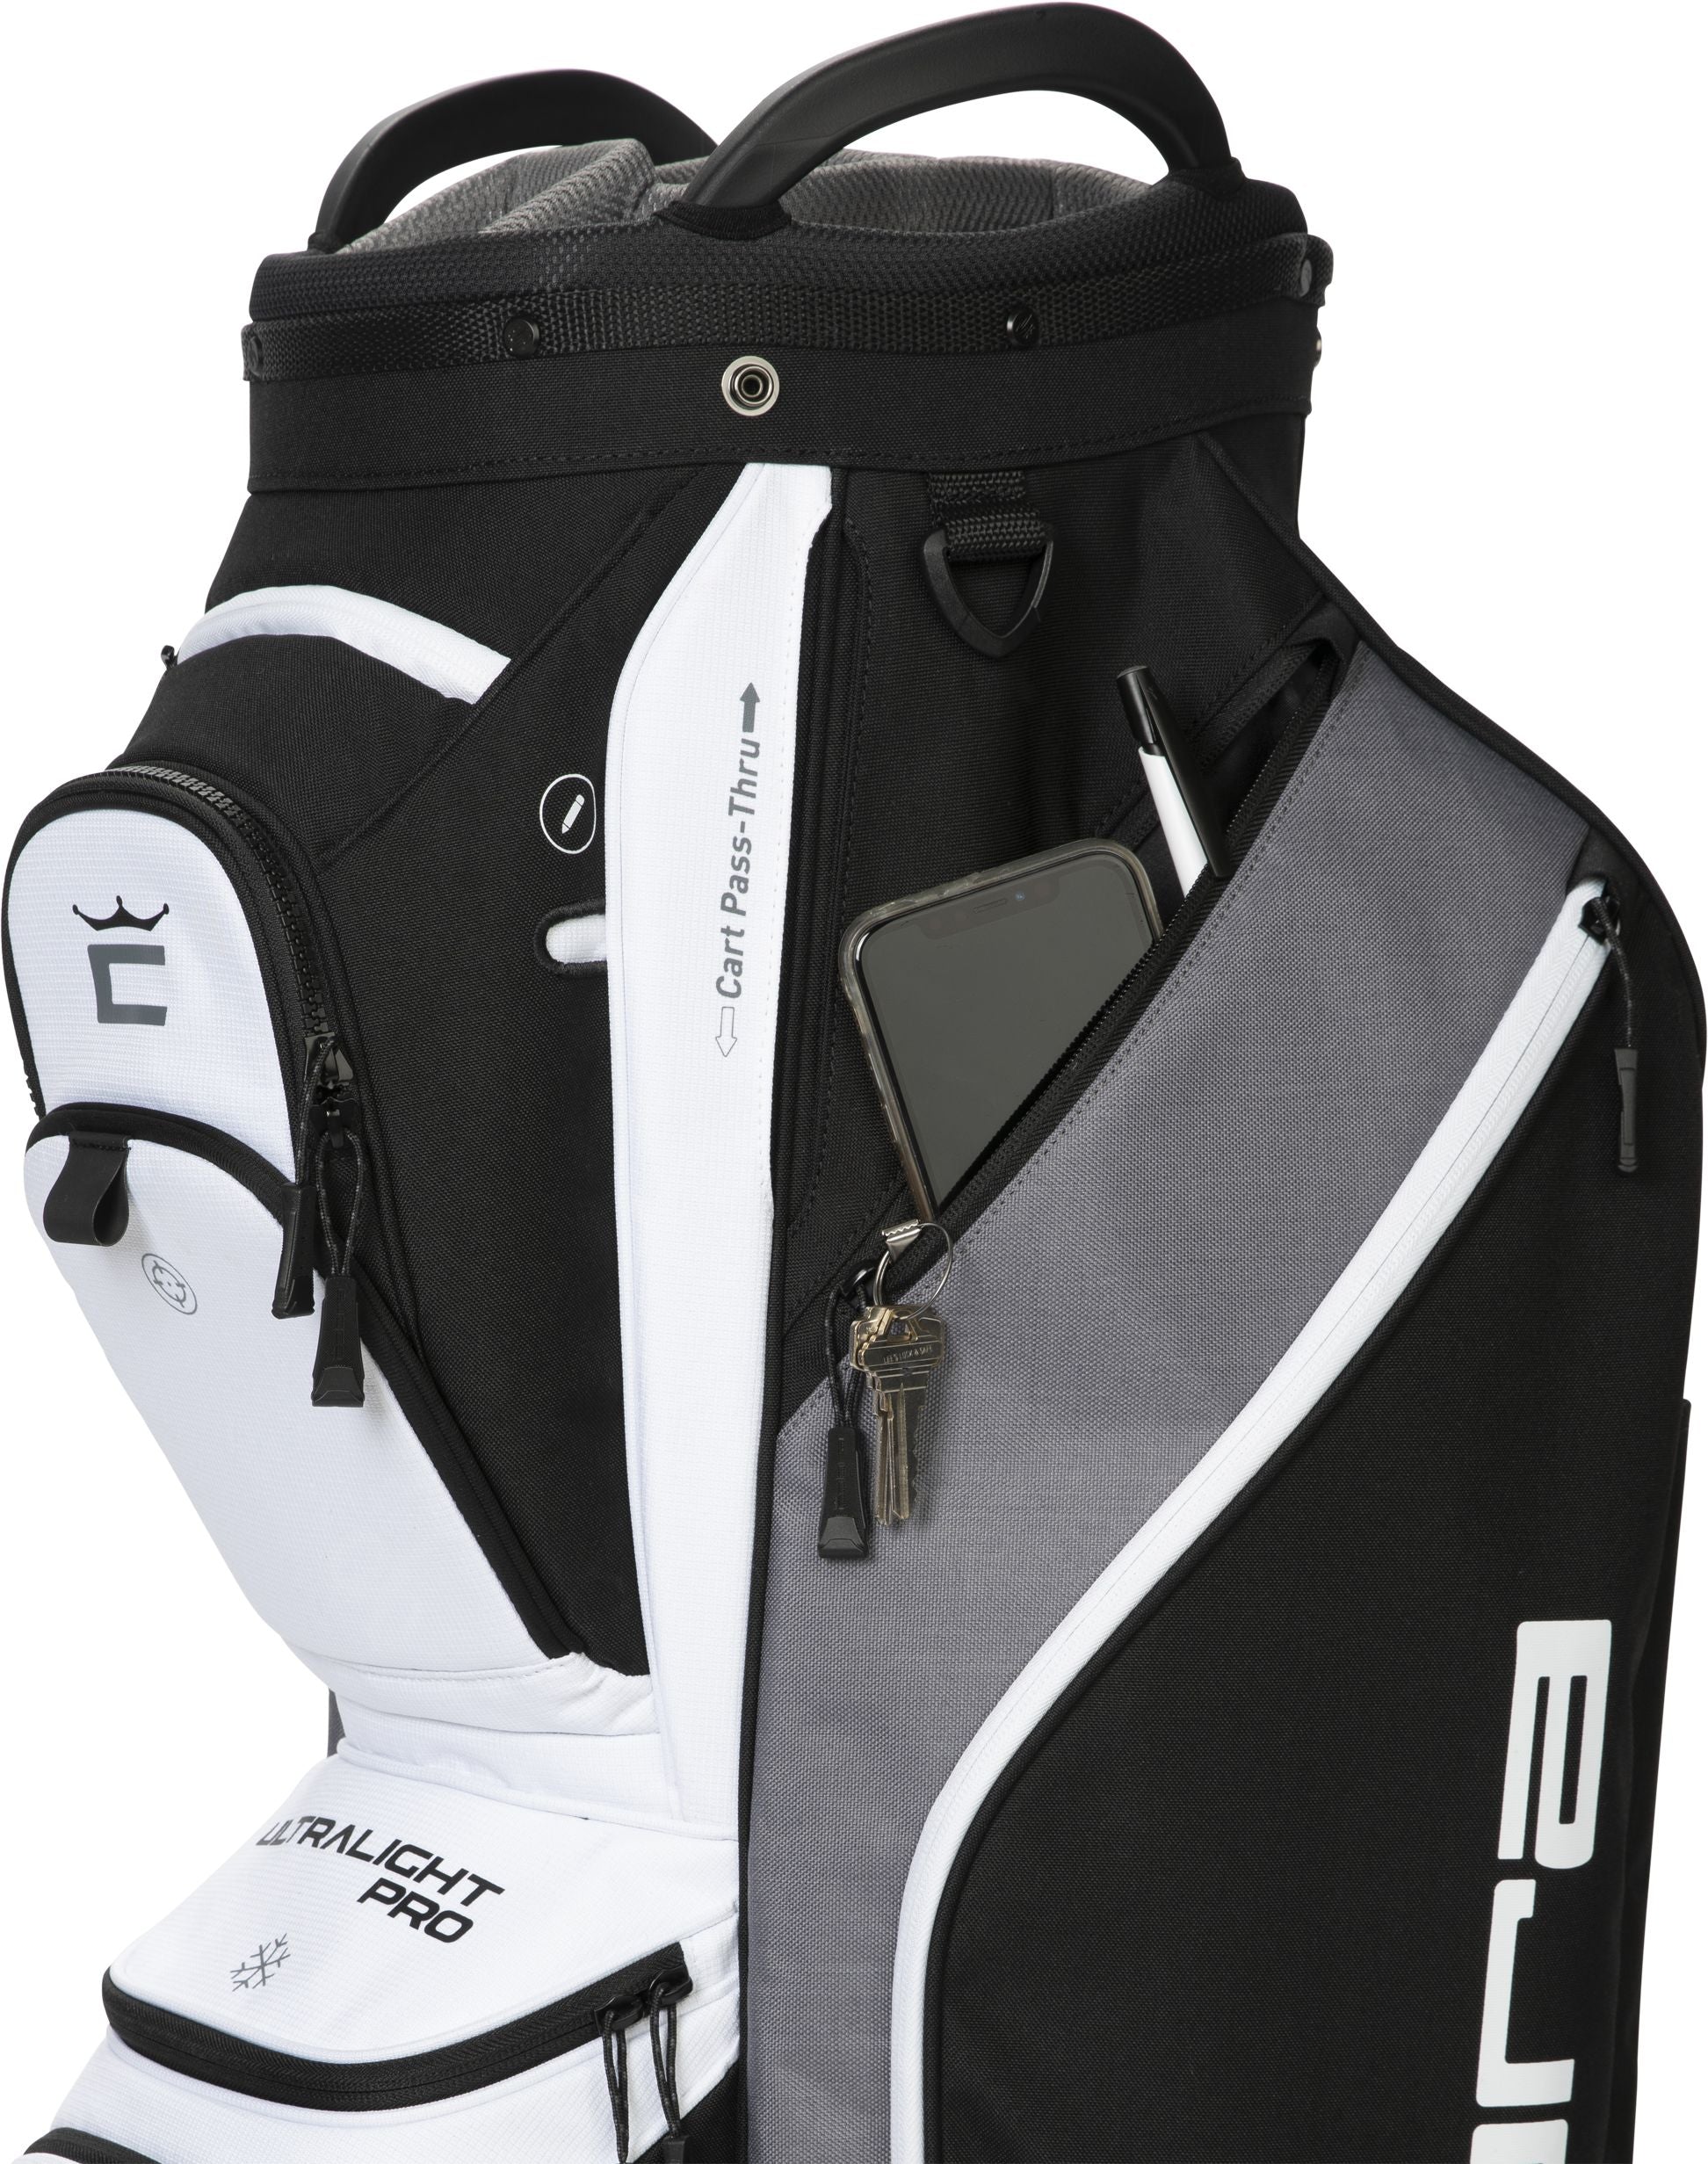 Ultralight Pro Cart Golf Bag Musta | Harmaa